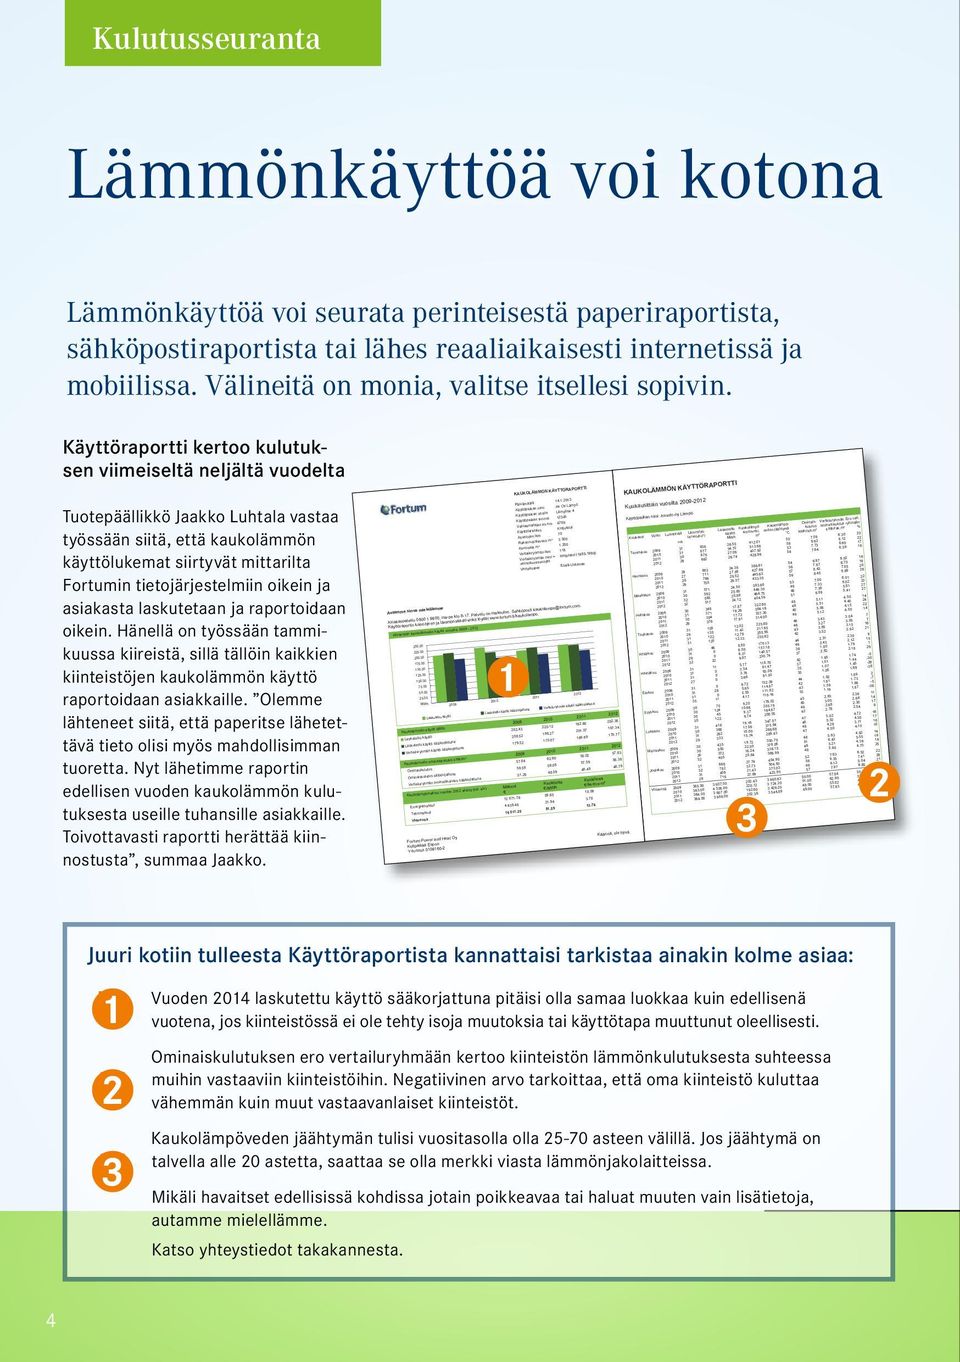 Käyttöraportti kertoo kulutuksen viimeiseltä neljältä vuodelta Tuotepäällikkö Jaakko Luhtala vastaa työssään siitä, että kaukolämmön käyttölukemat siirtyvät mittarilta Fortumin tietojärjestelmiin